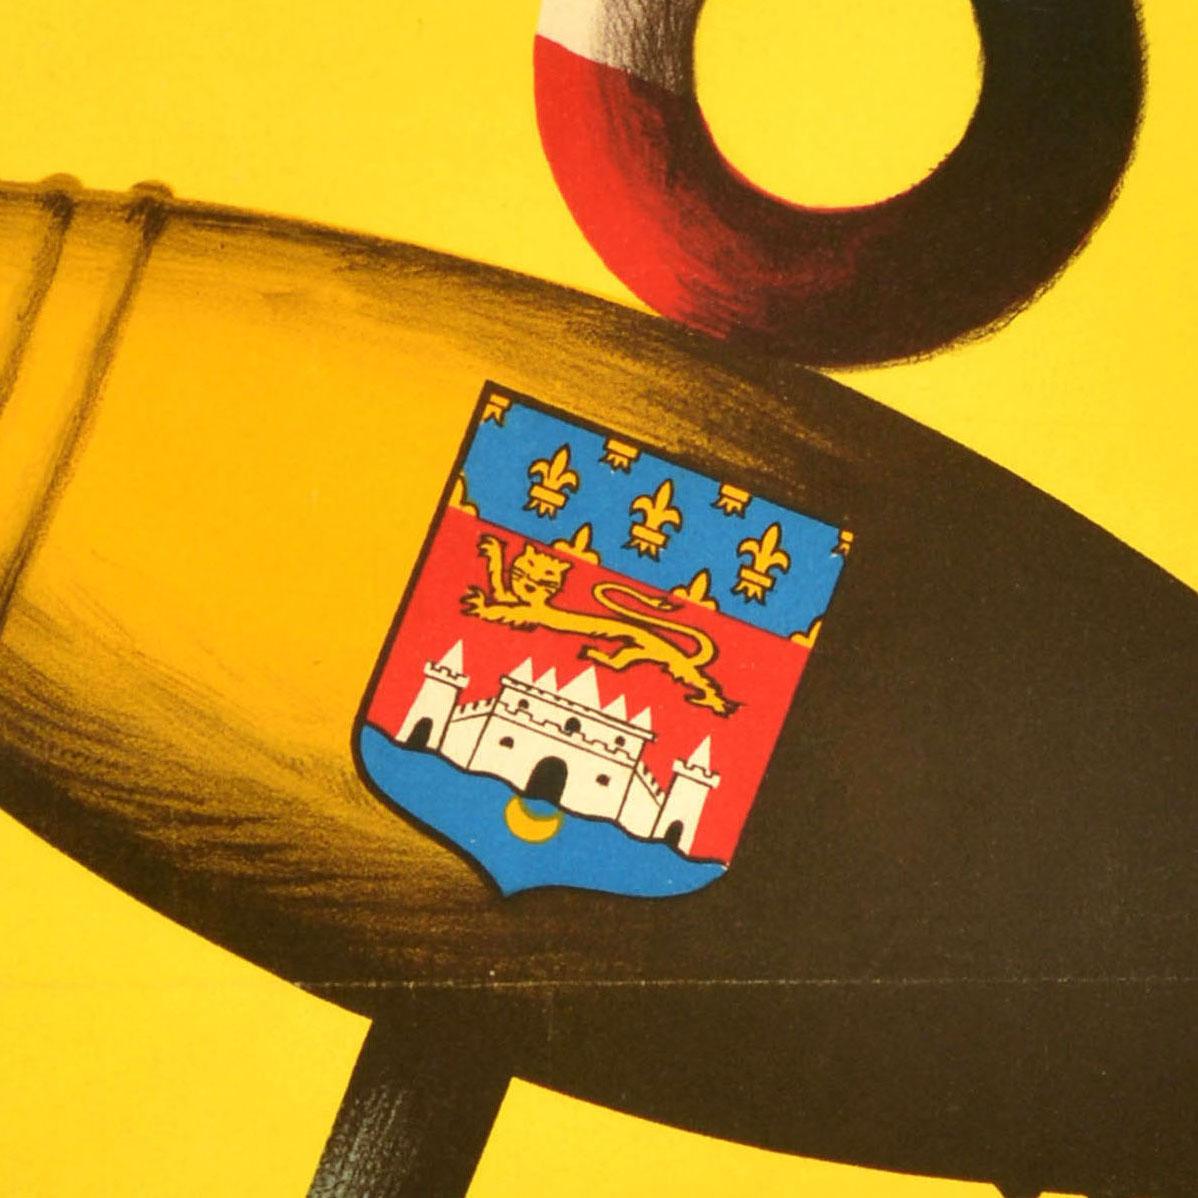 Original Vintage-Getränke-Werbeplakat für Bordeaux-Weine aus Frankreich - vins de Bordeaux le monde entier les apprecie, vous aussi / Bordeaux-Weine Die ganze Welt schätzt sie, auch du - mit einem hellen und farbenfrohen Design des französischen